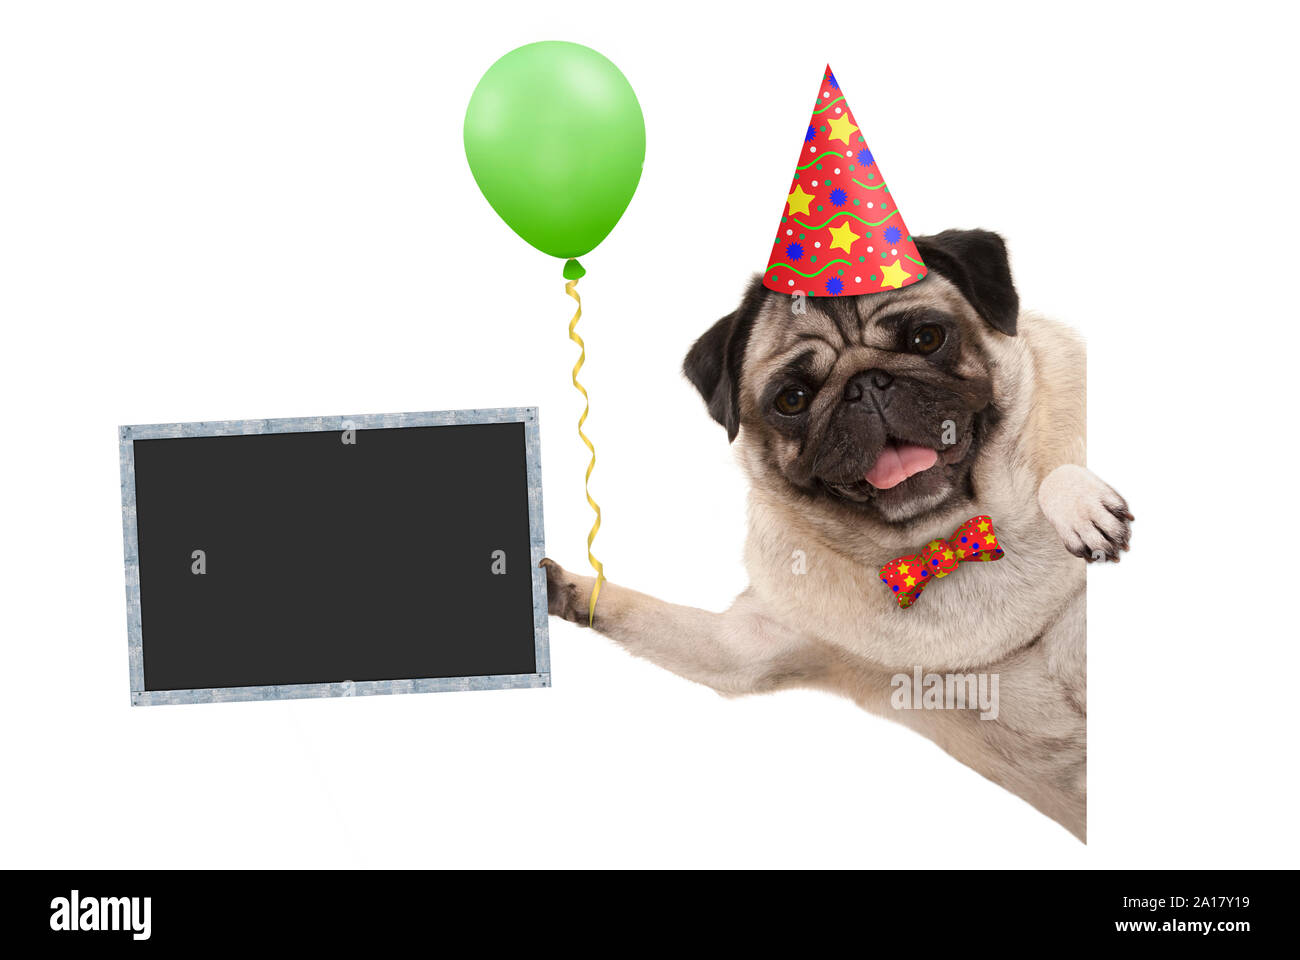 Frolic sorridente festa di compleanno pug dog con palloncino e hat decorazione azienda lavagna vuota segno, isolati su sfondo bianco Foto Stock